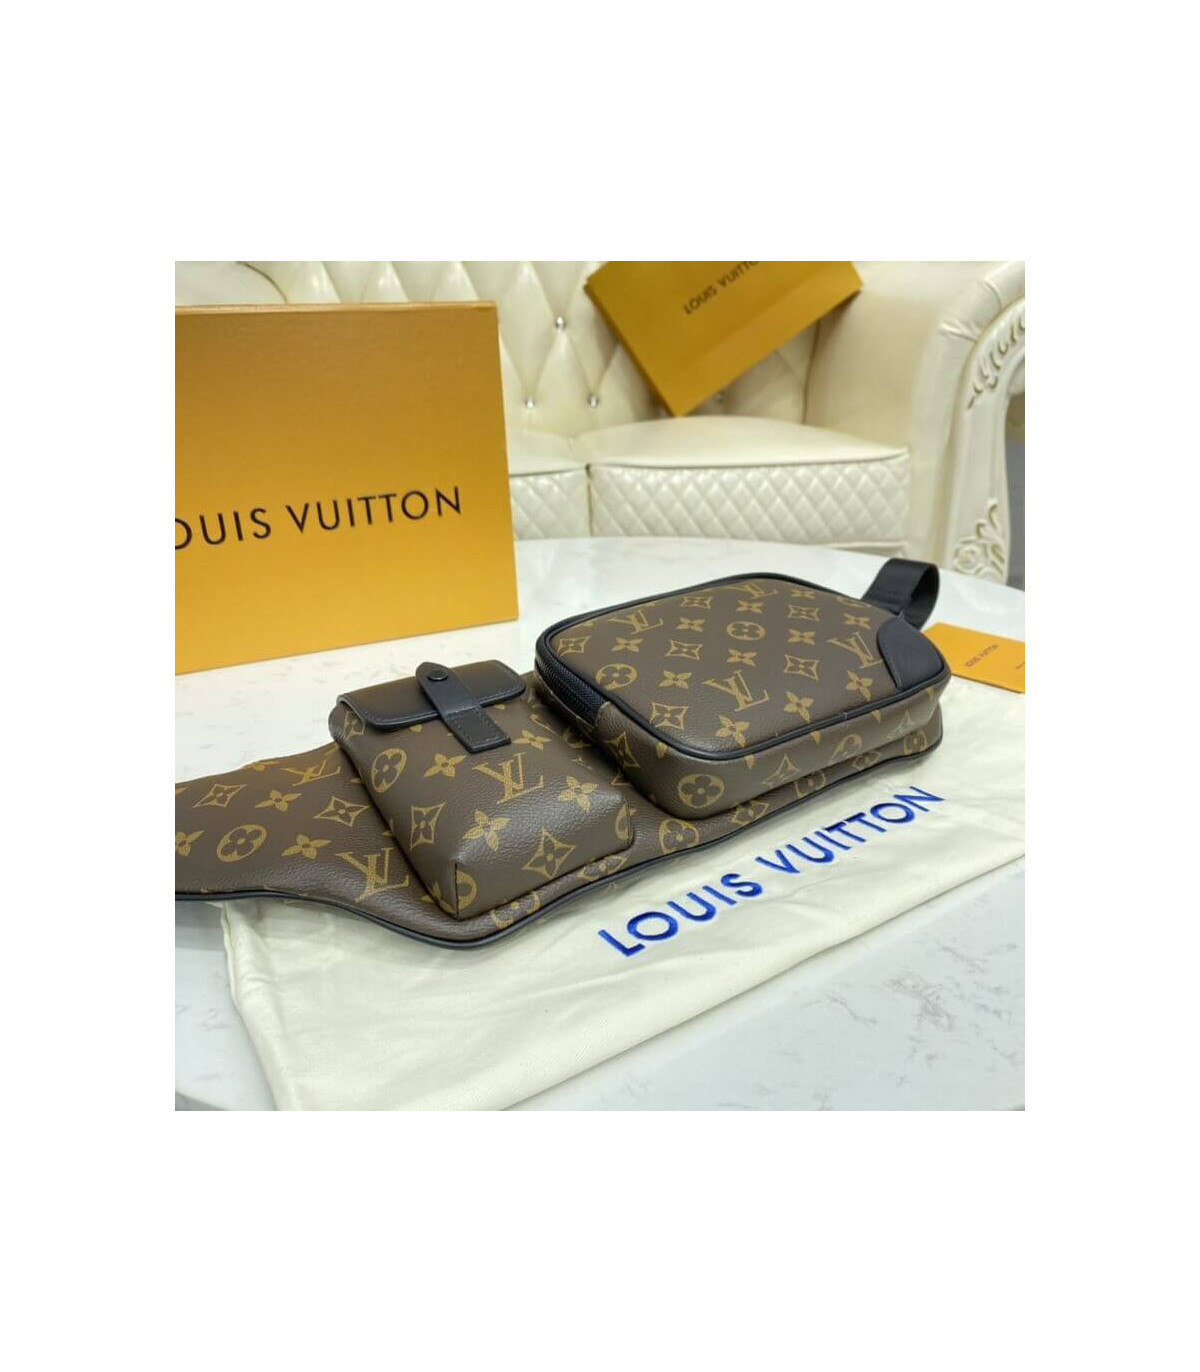 Shop Louis Vuitton CHRISTOPHER Christopher bumbag (M45337) by CITYMONOSHOP